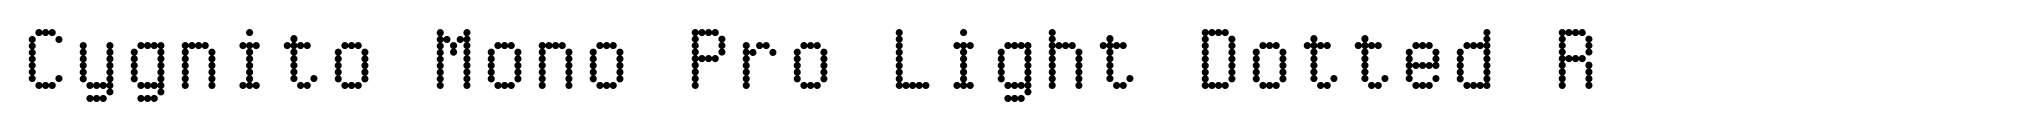 Cygnito Mono Pro Light Dotted R image